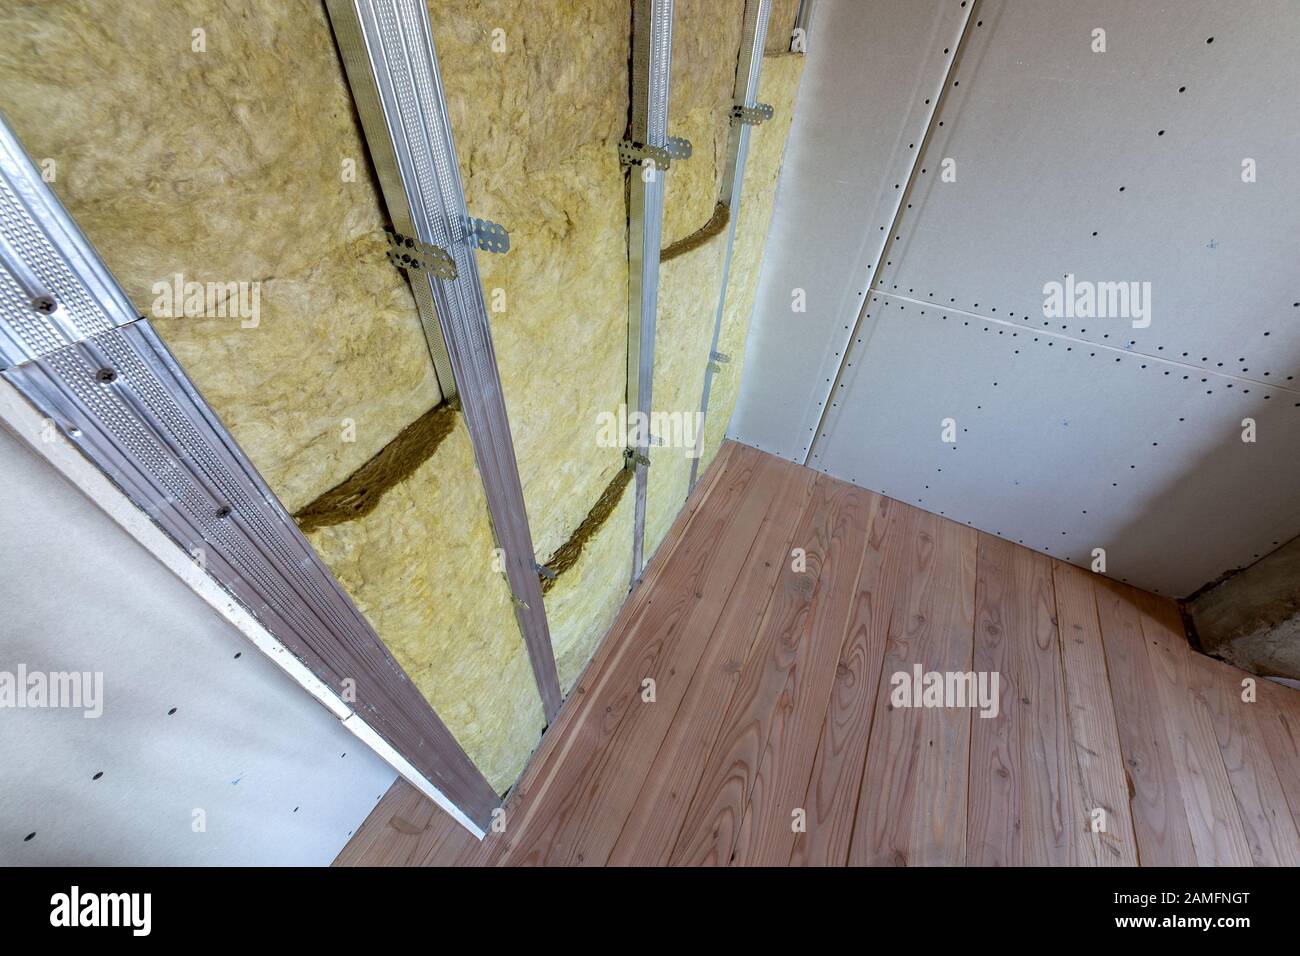 Haus in unvollendeten im Bau in Dämmschaum die Wand Dach des Dachbodens  Stockfotografie - Alamy